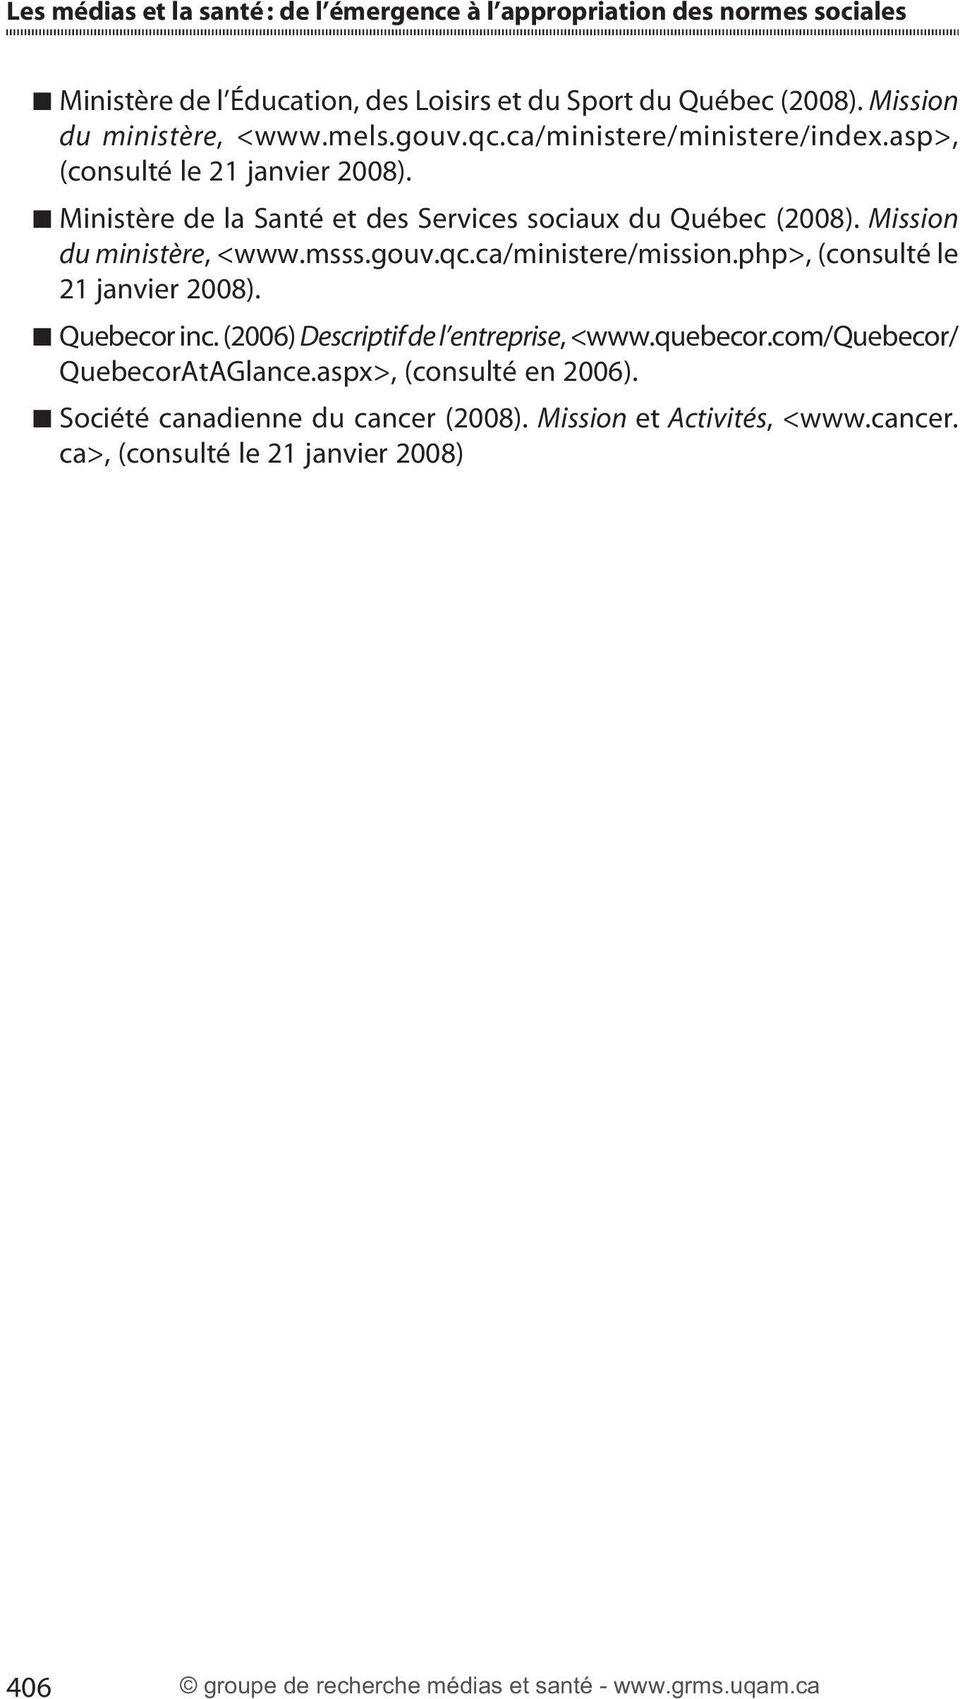 Ministère de la Santé et des Services sociaux du Québec (2008). Mission du ministère, <www.msss.gouv.qc.ca/ministere/mission.php>, (consulté le 21 janvier 2008).